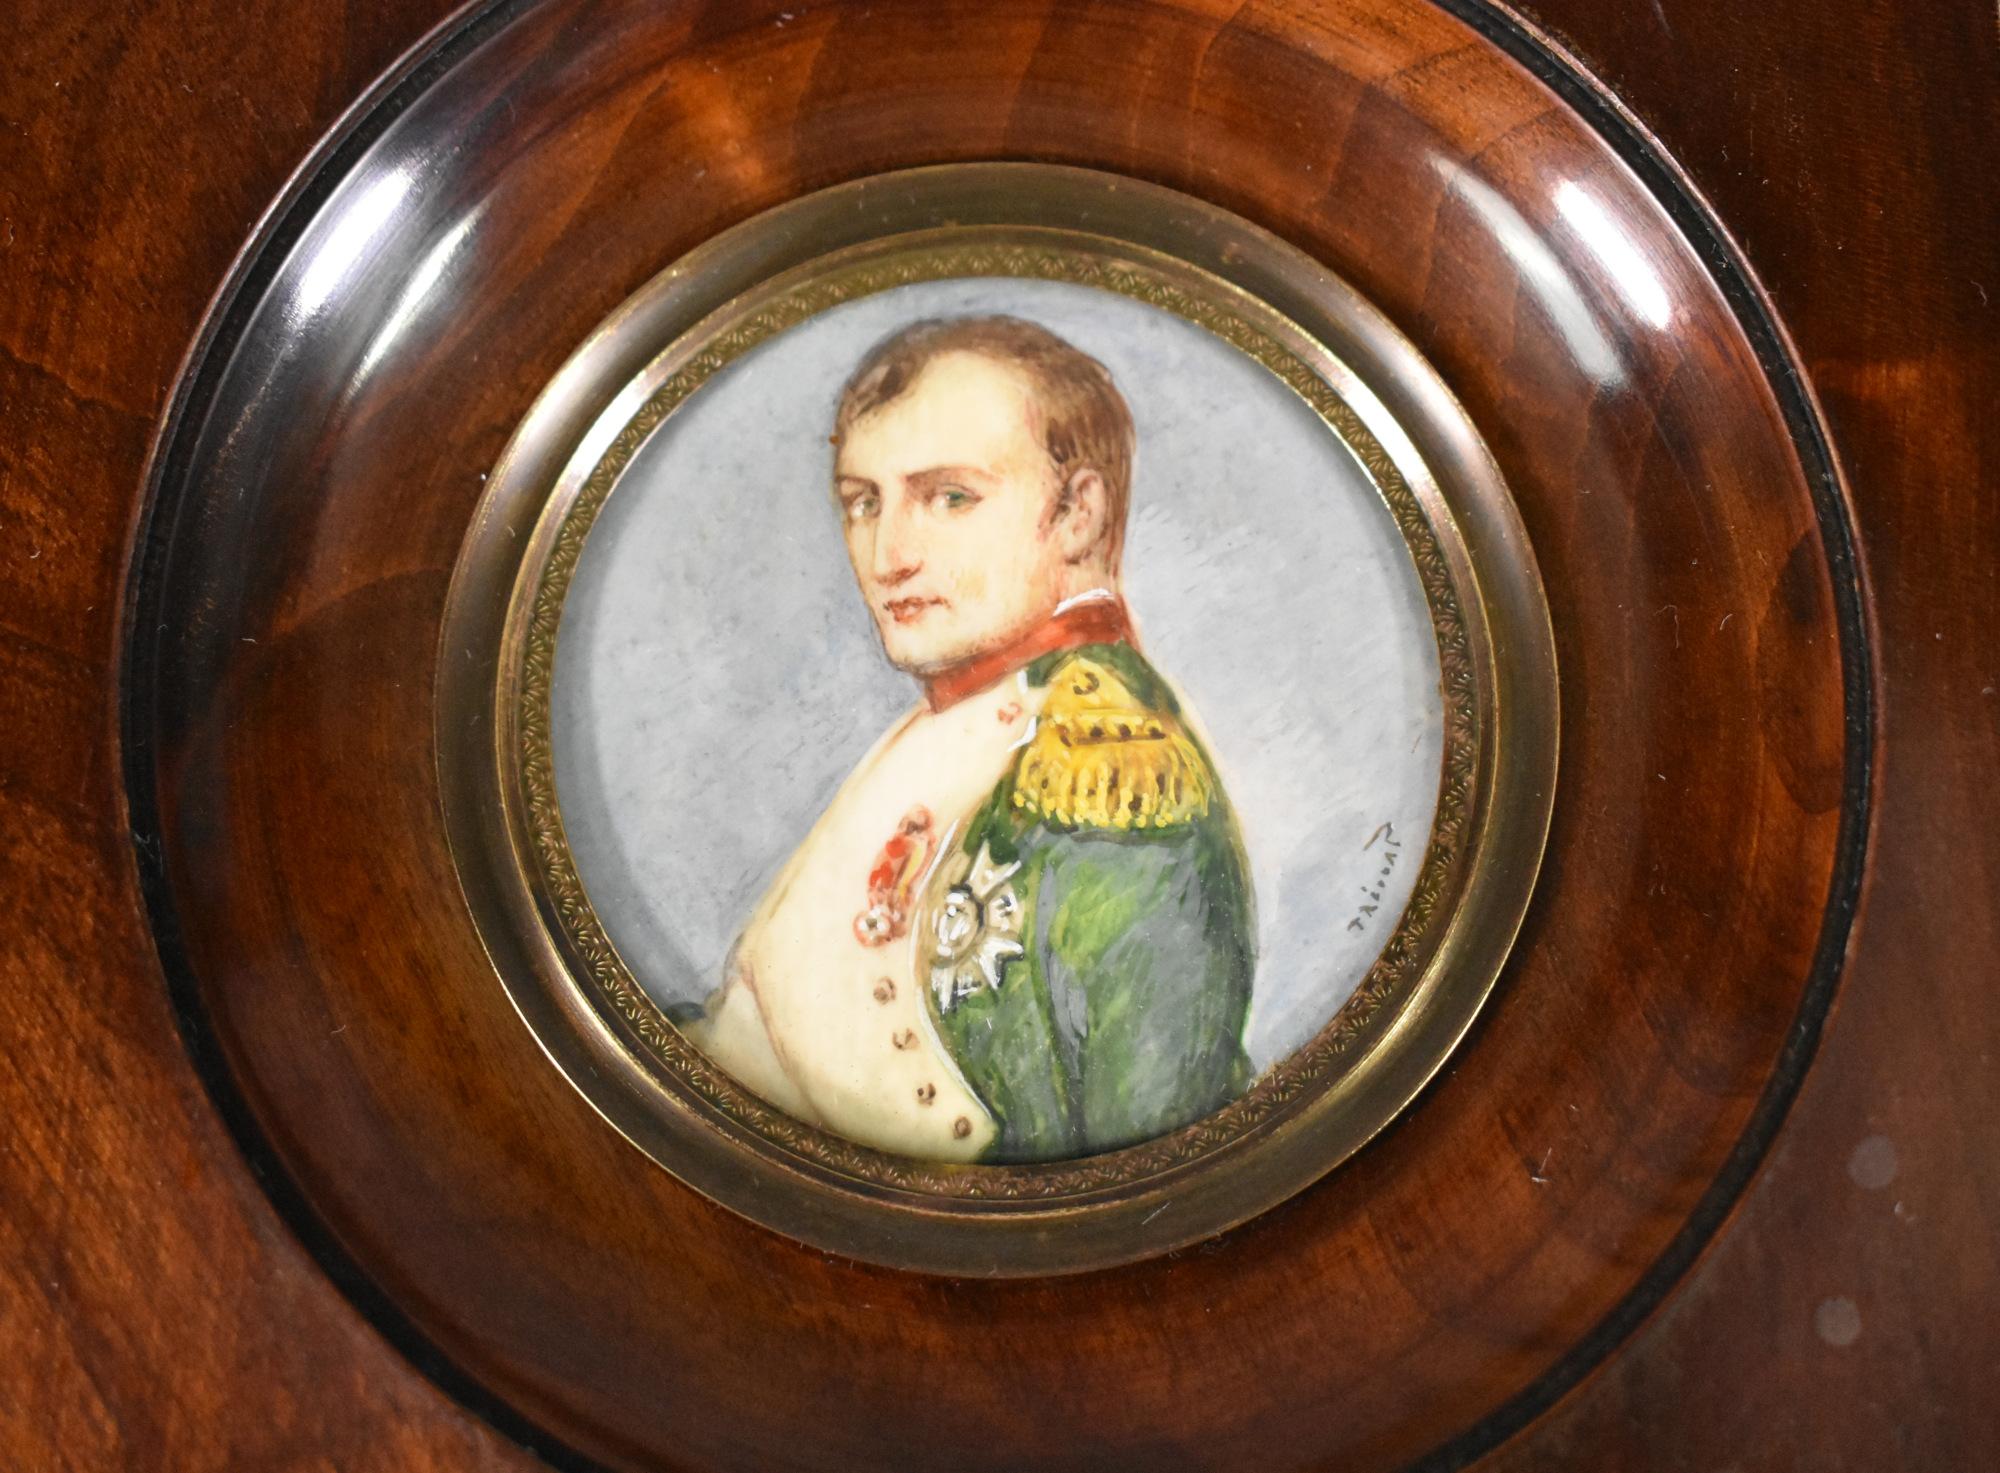 Miniatura di ritratto di Napoleone firmata da Prévost del XIX secolo. 

La cornice è in mogano massiccio ed è bombata e lucidissima.

Il vetro trasparente convesso è tenuto in posizione da una lunetta in ottone. 

La firma Prévost si trova in